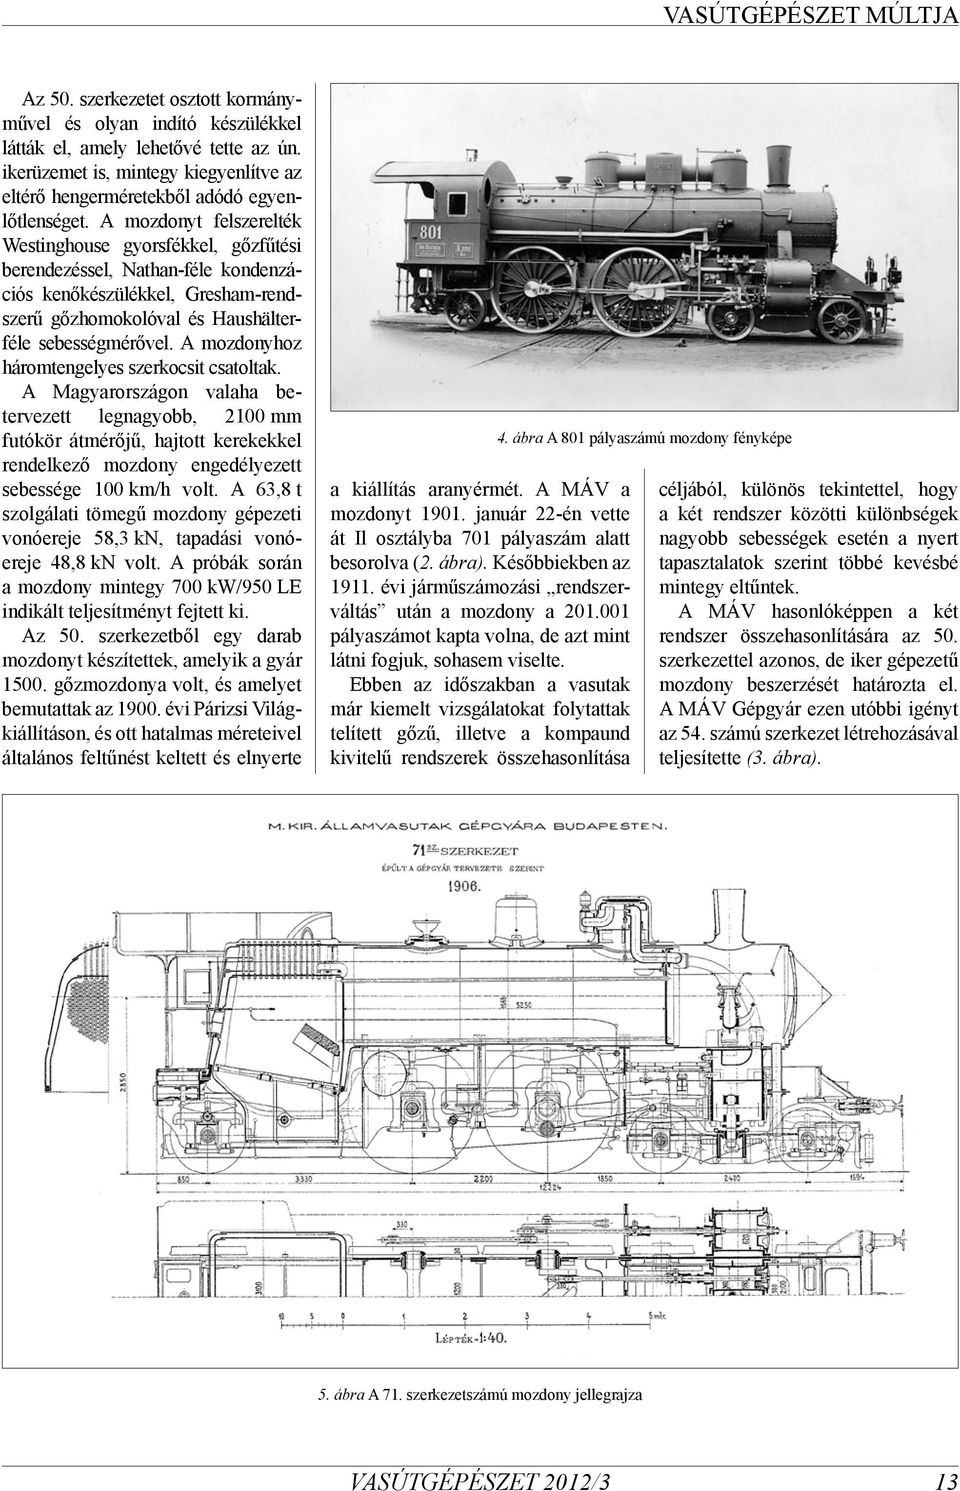 A mozdonyhoz háromtengelyes szerkocsit csatoltak. A Magyarországon valaha betervezett legnagyobb, 2100 mm futókör átmérőjű, hajtott kerekekkel rendelkező mozdony engedélyezett sebessége 100 km/h volt.